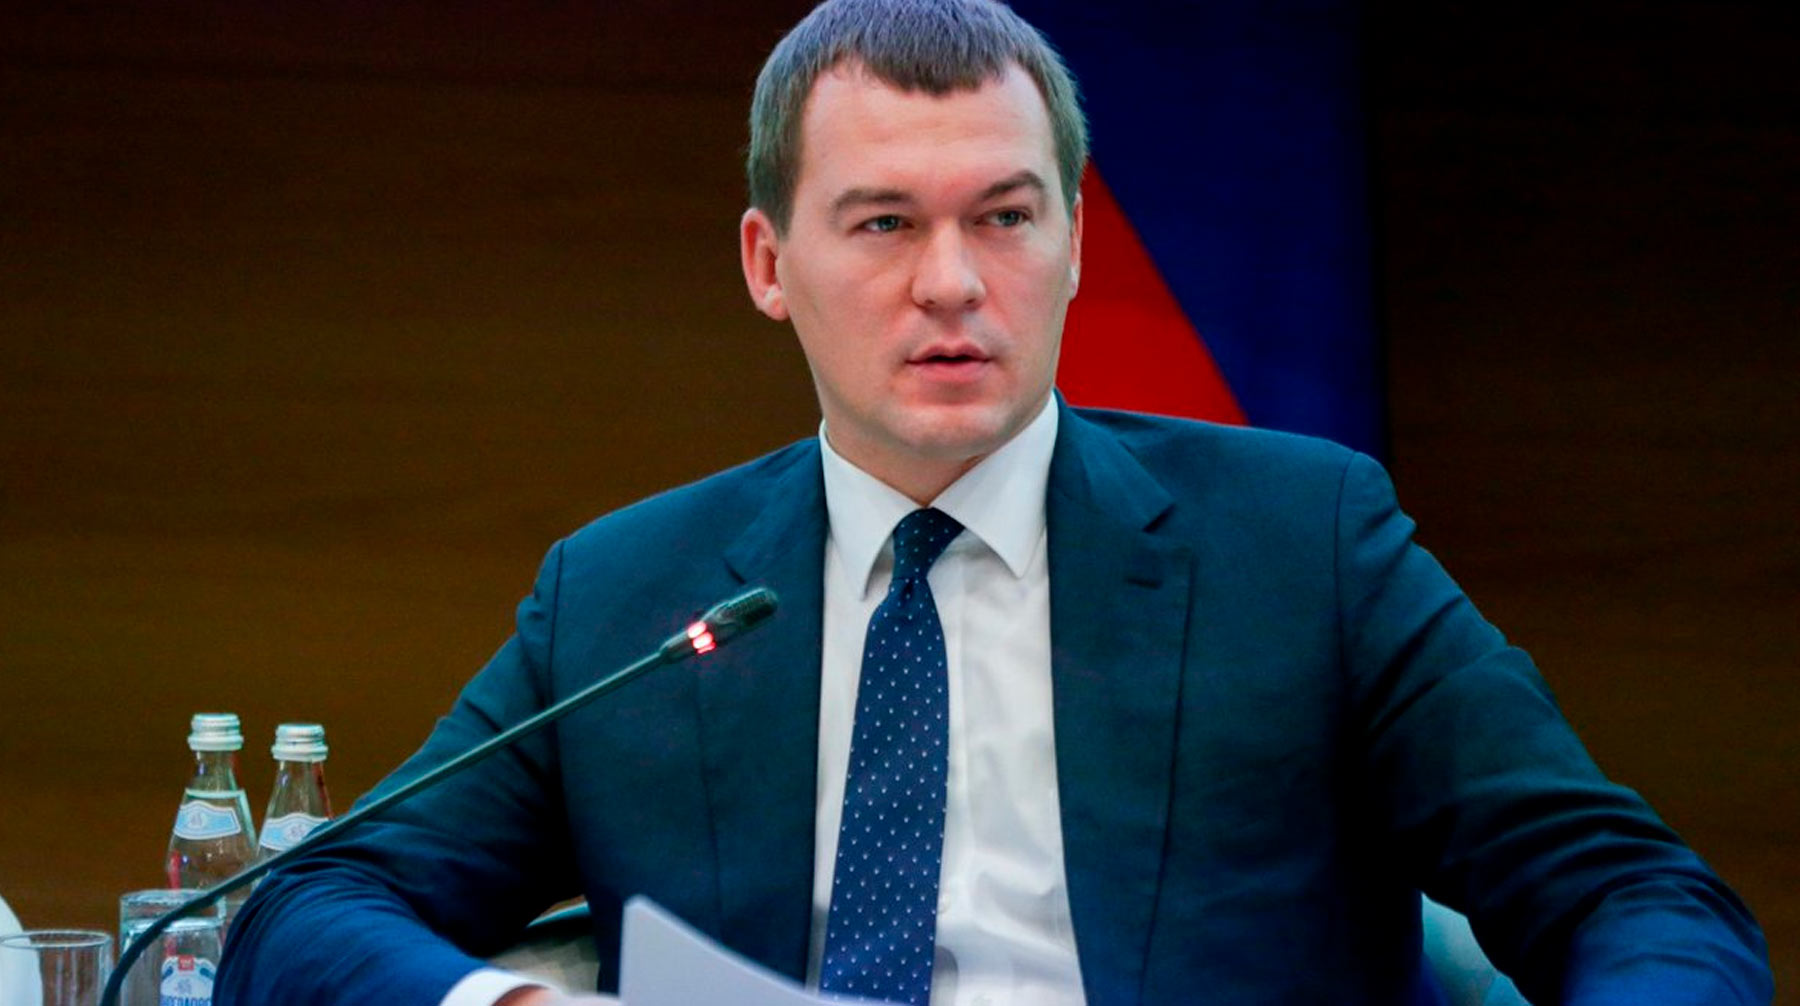 Спикер Госдумы также отметил, что депутат от ЛДПР является профессионалом и хорошо знает проблемы регионов Михаил Дегтярев